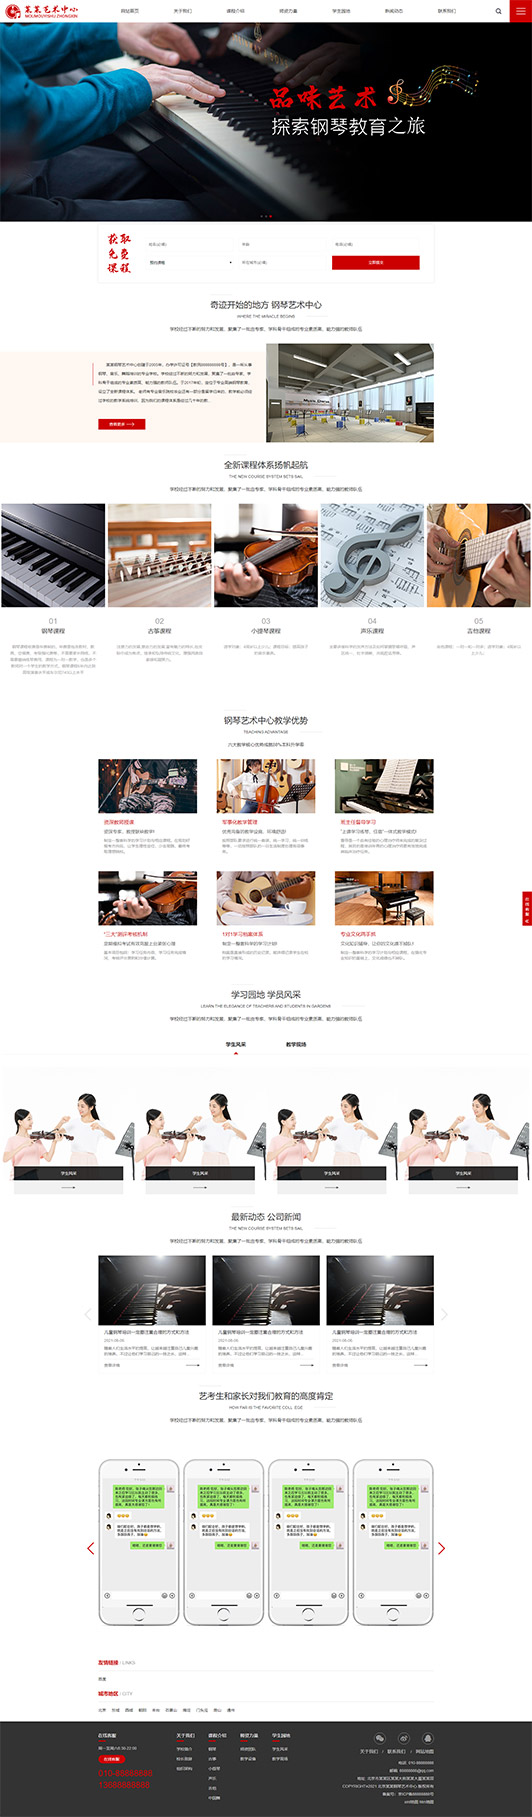 平顶山钢琴艺术培训公司响应式企业网站